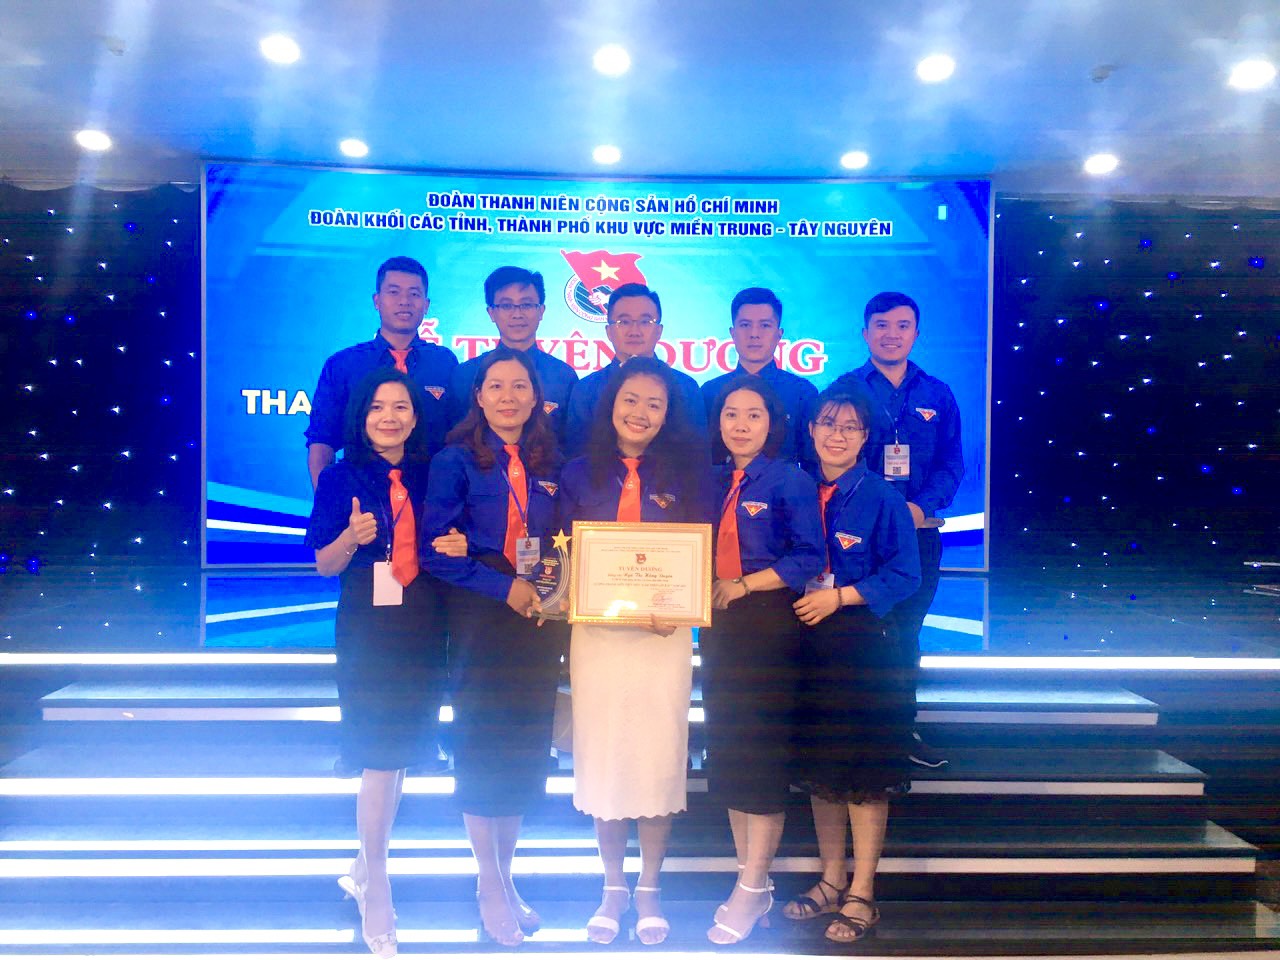 Đoàn Khối các cơ quan và doanh nghiệp tỉnh Đắk Nông tham dự Hội nghị giao ban và Liên hoan thanh niên tiên tiến Đoàn Khối các tỉnh, thành phố khu vực Miền Trung - Tây Nguyên năm 2022